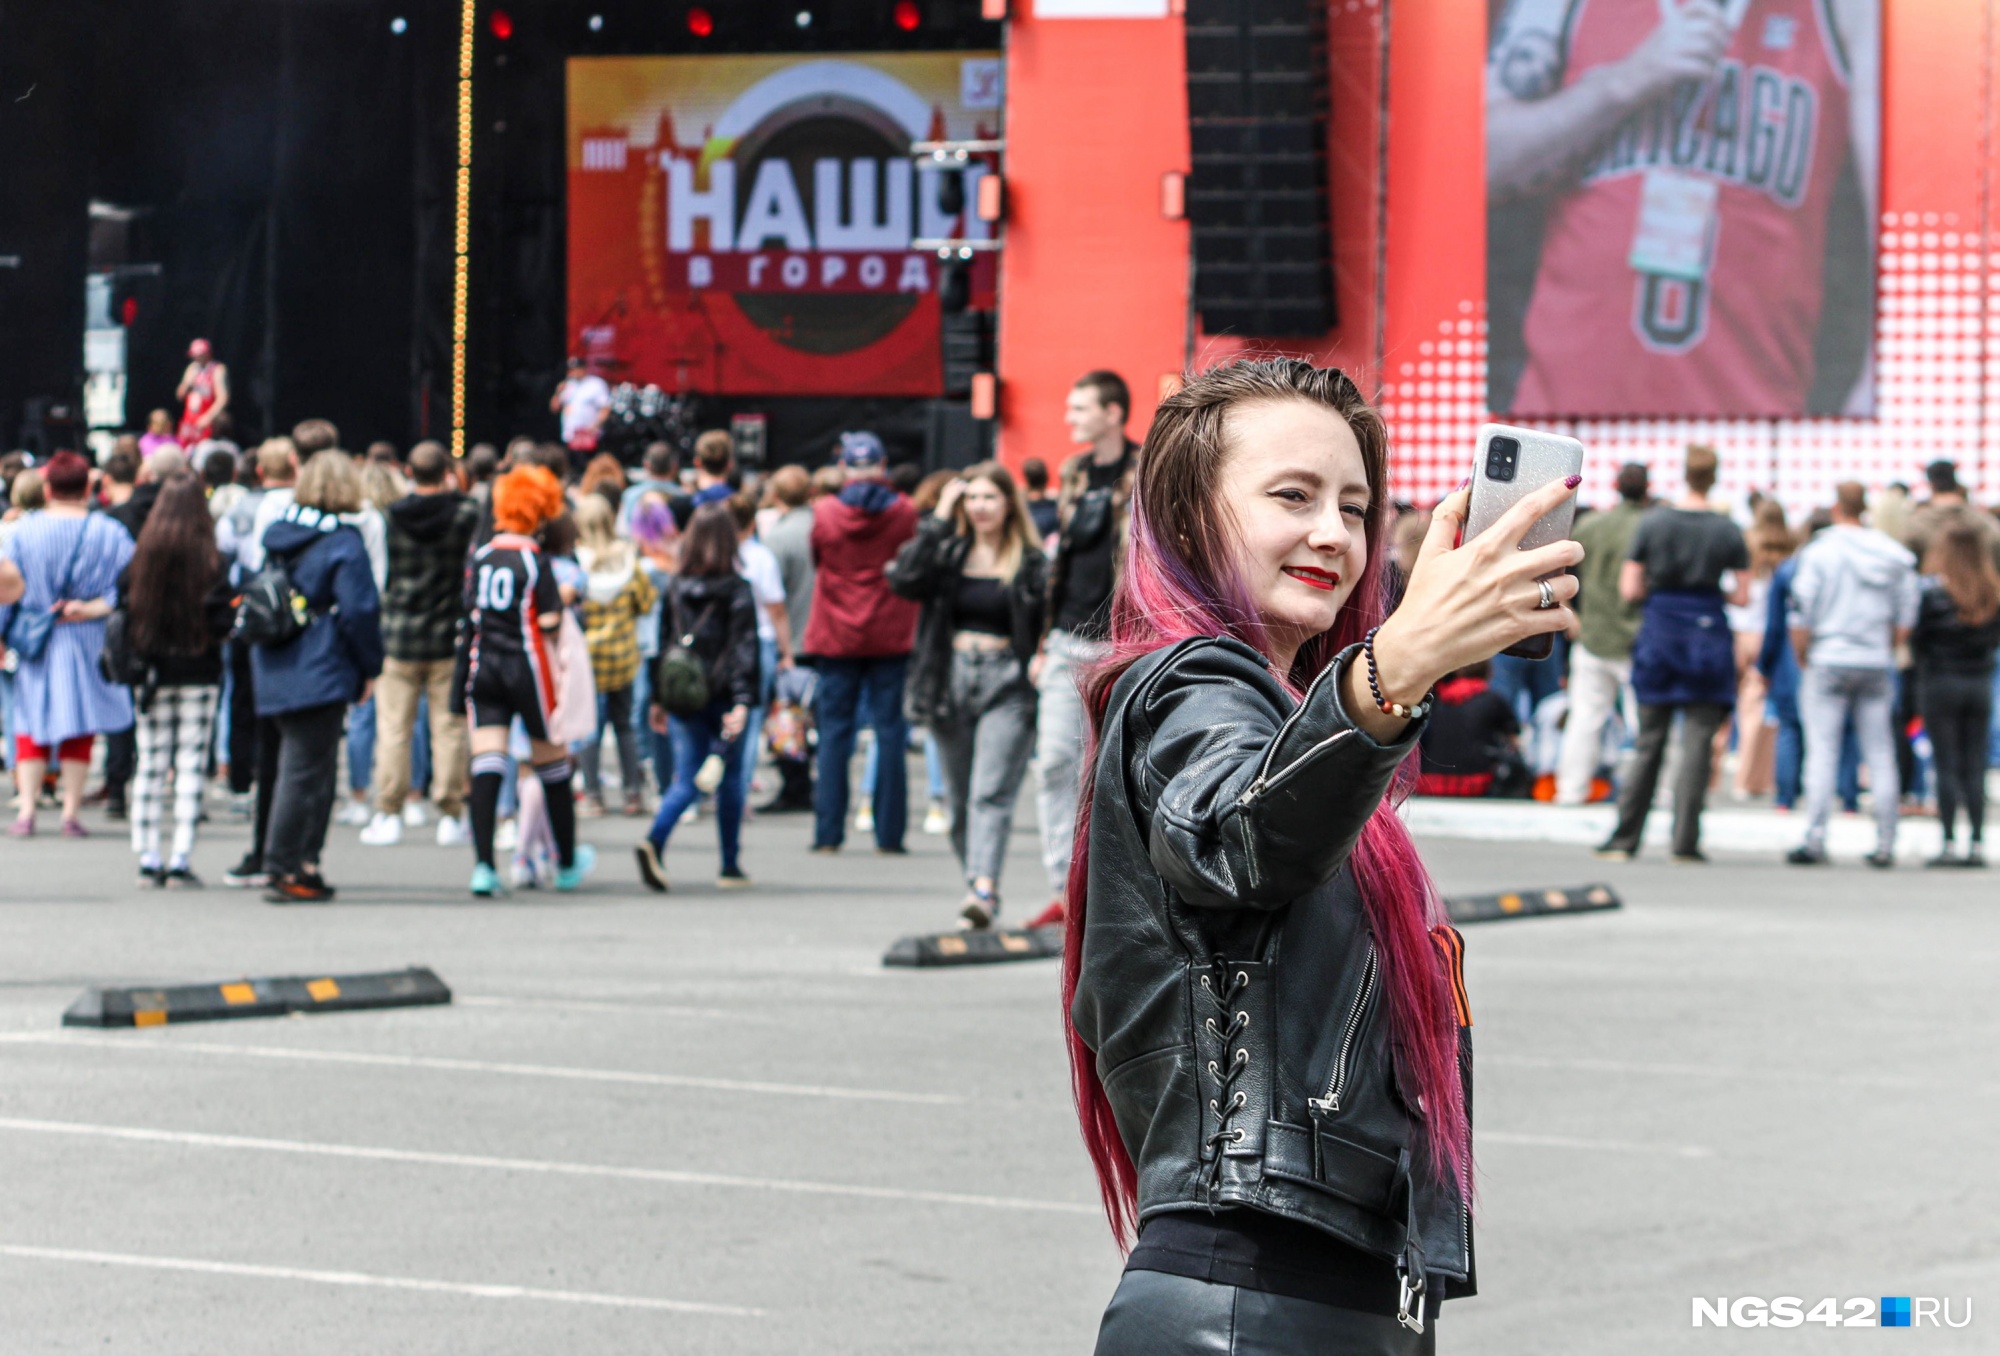 Наши в городе: фоторепортаж с большого рок-фестиваля в День города Новокузнецка